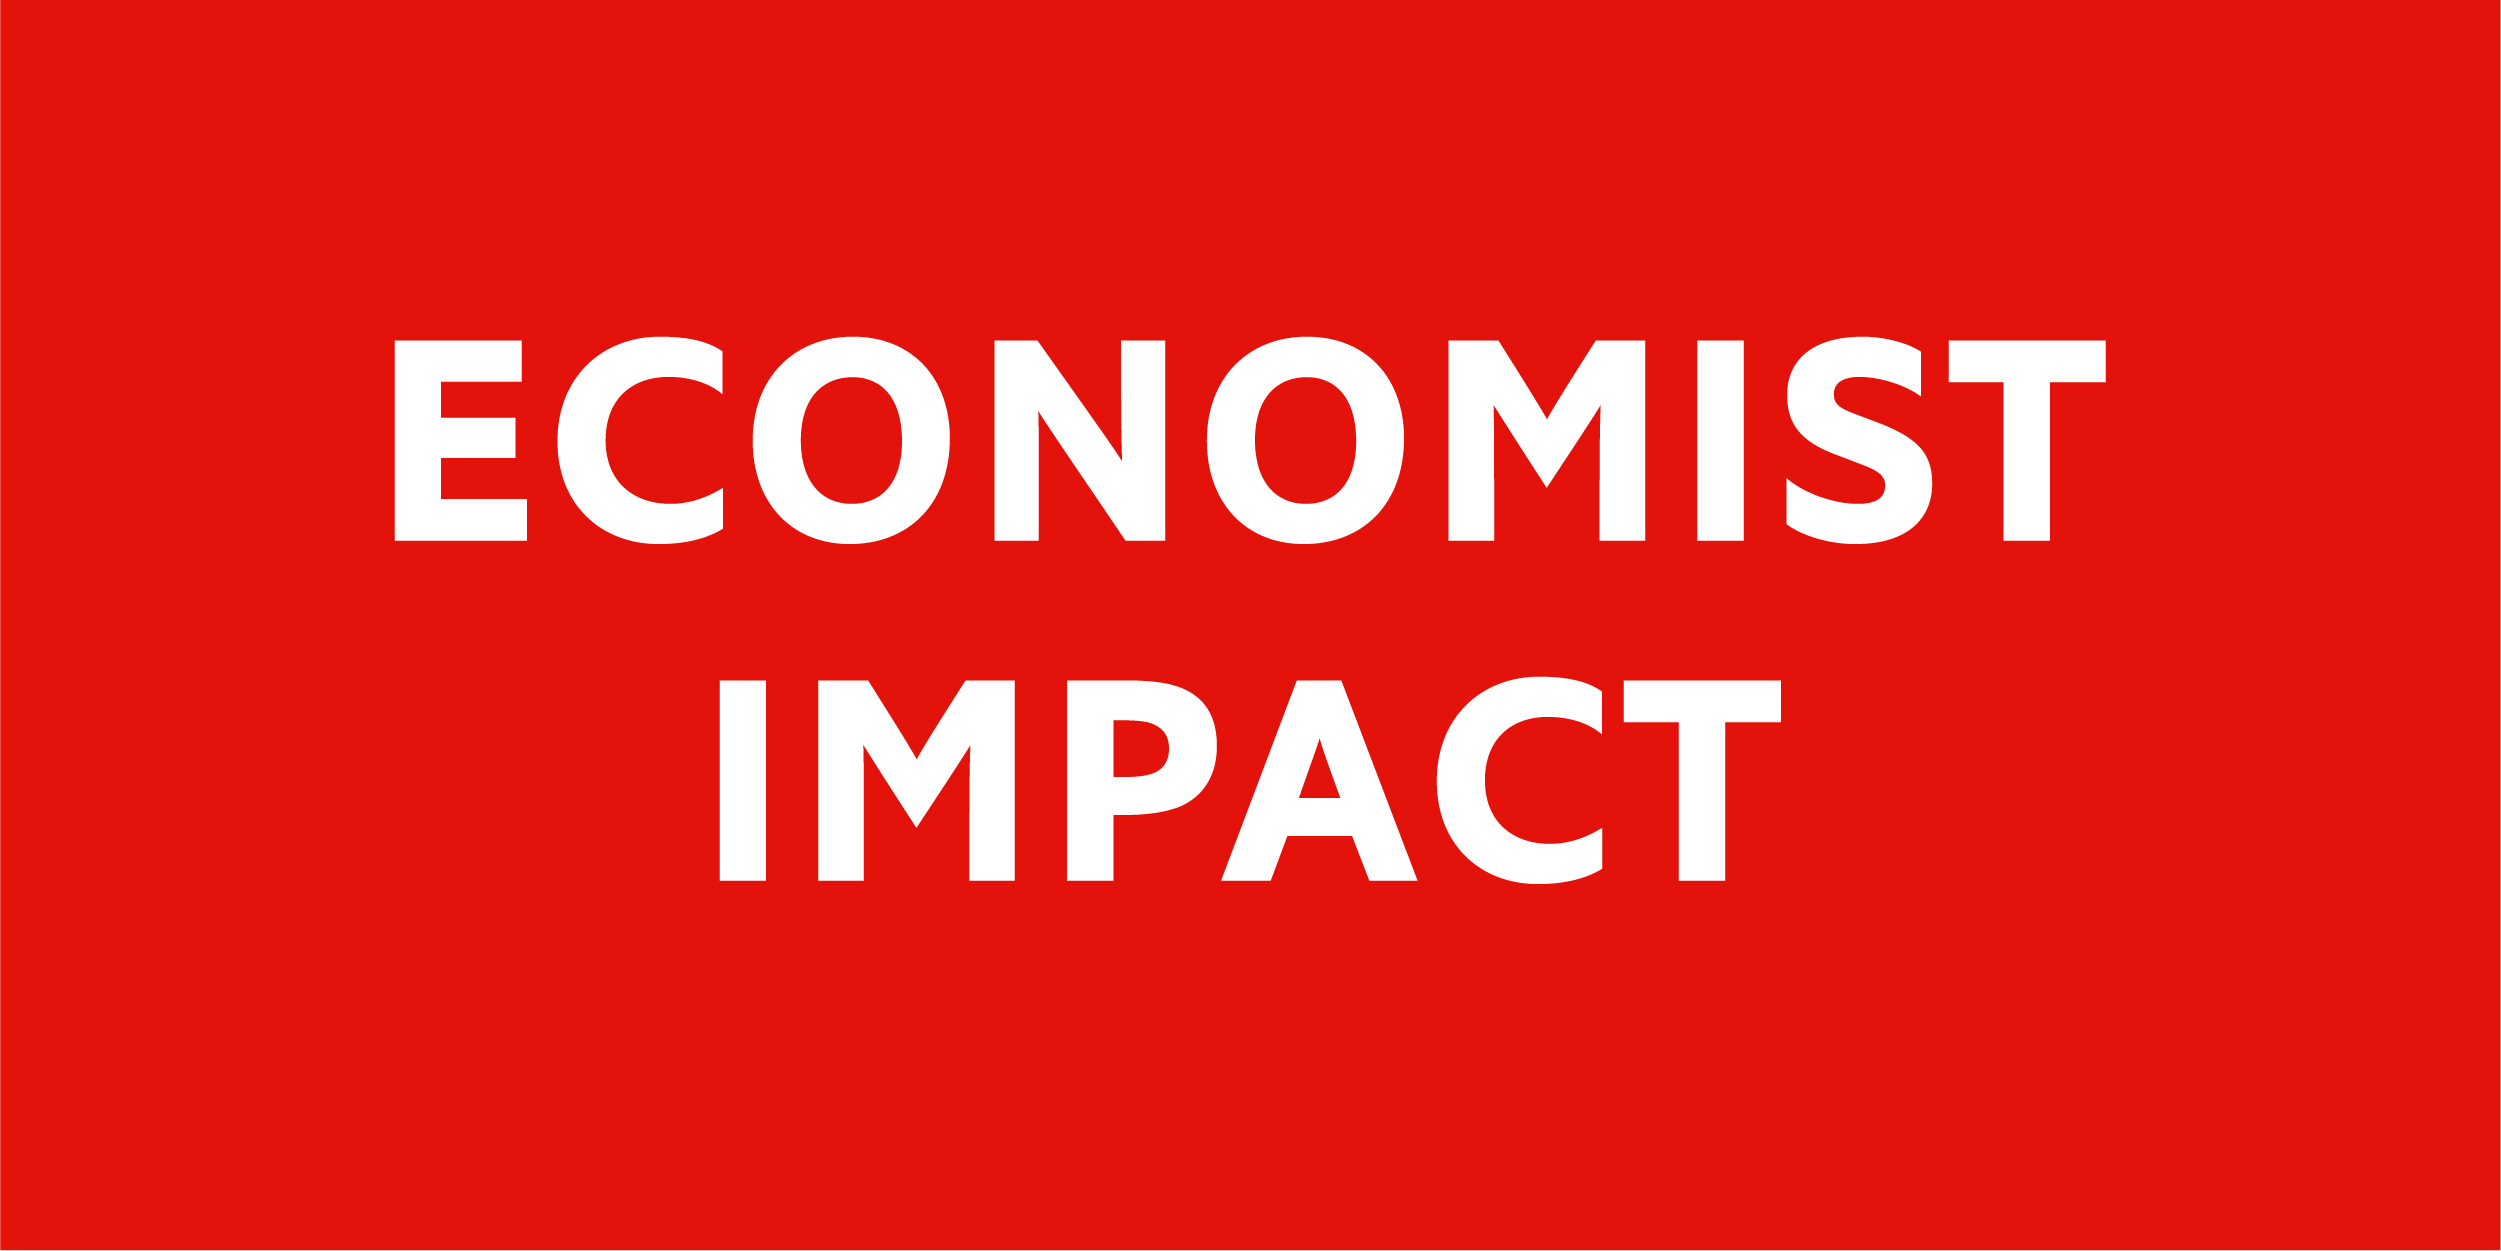 Economist_Impact_RGB.jpg